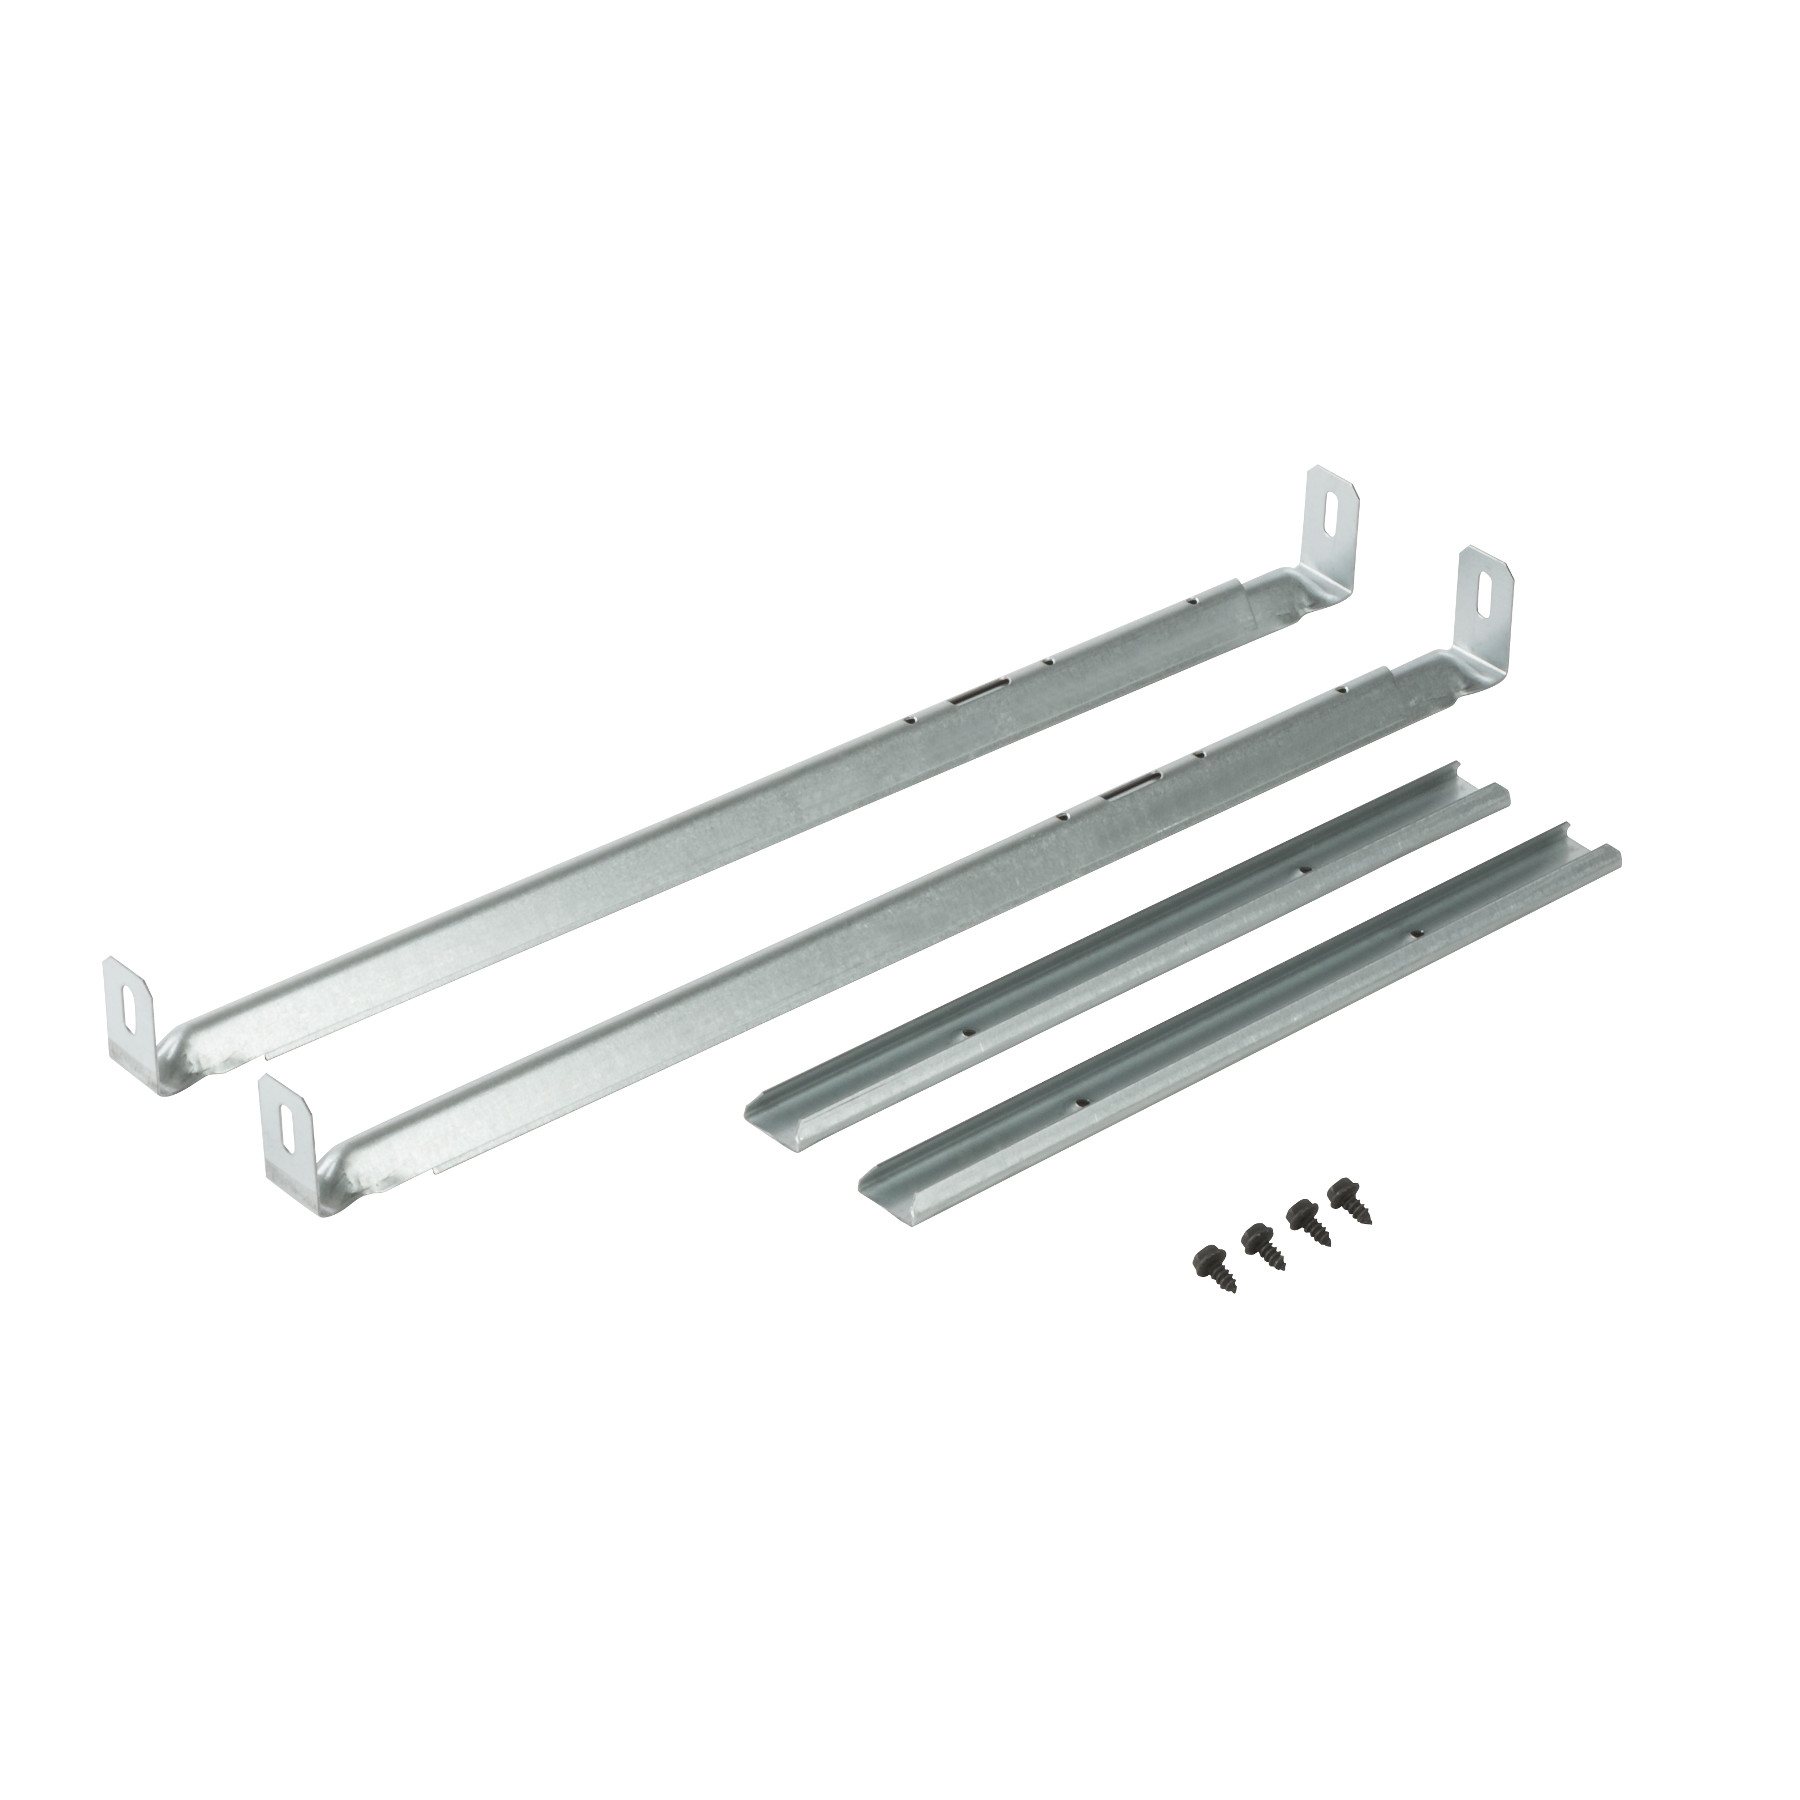 Broan-NuTone® Roomside Series Hanger Bars